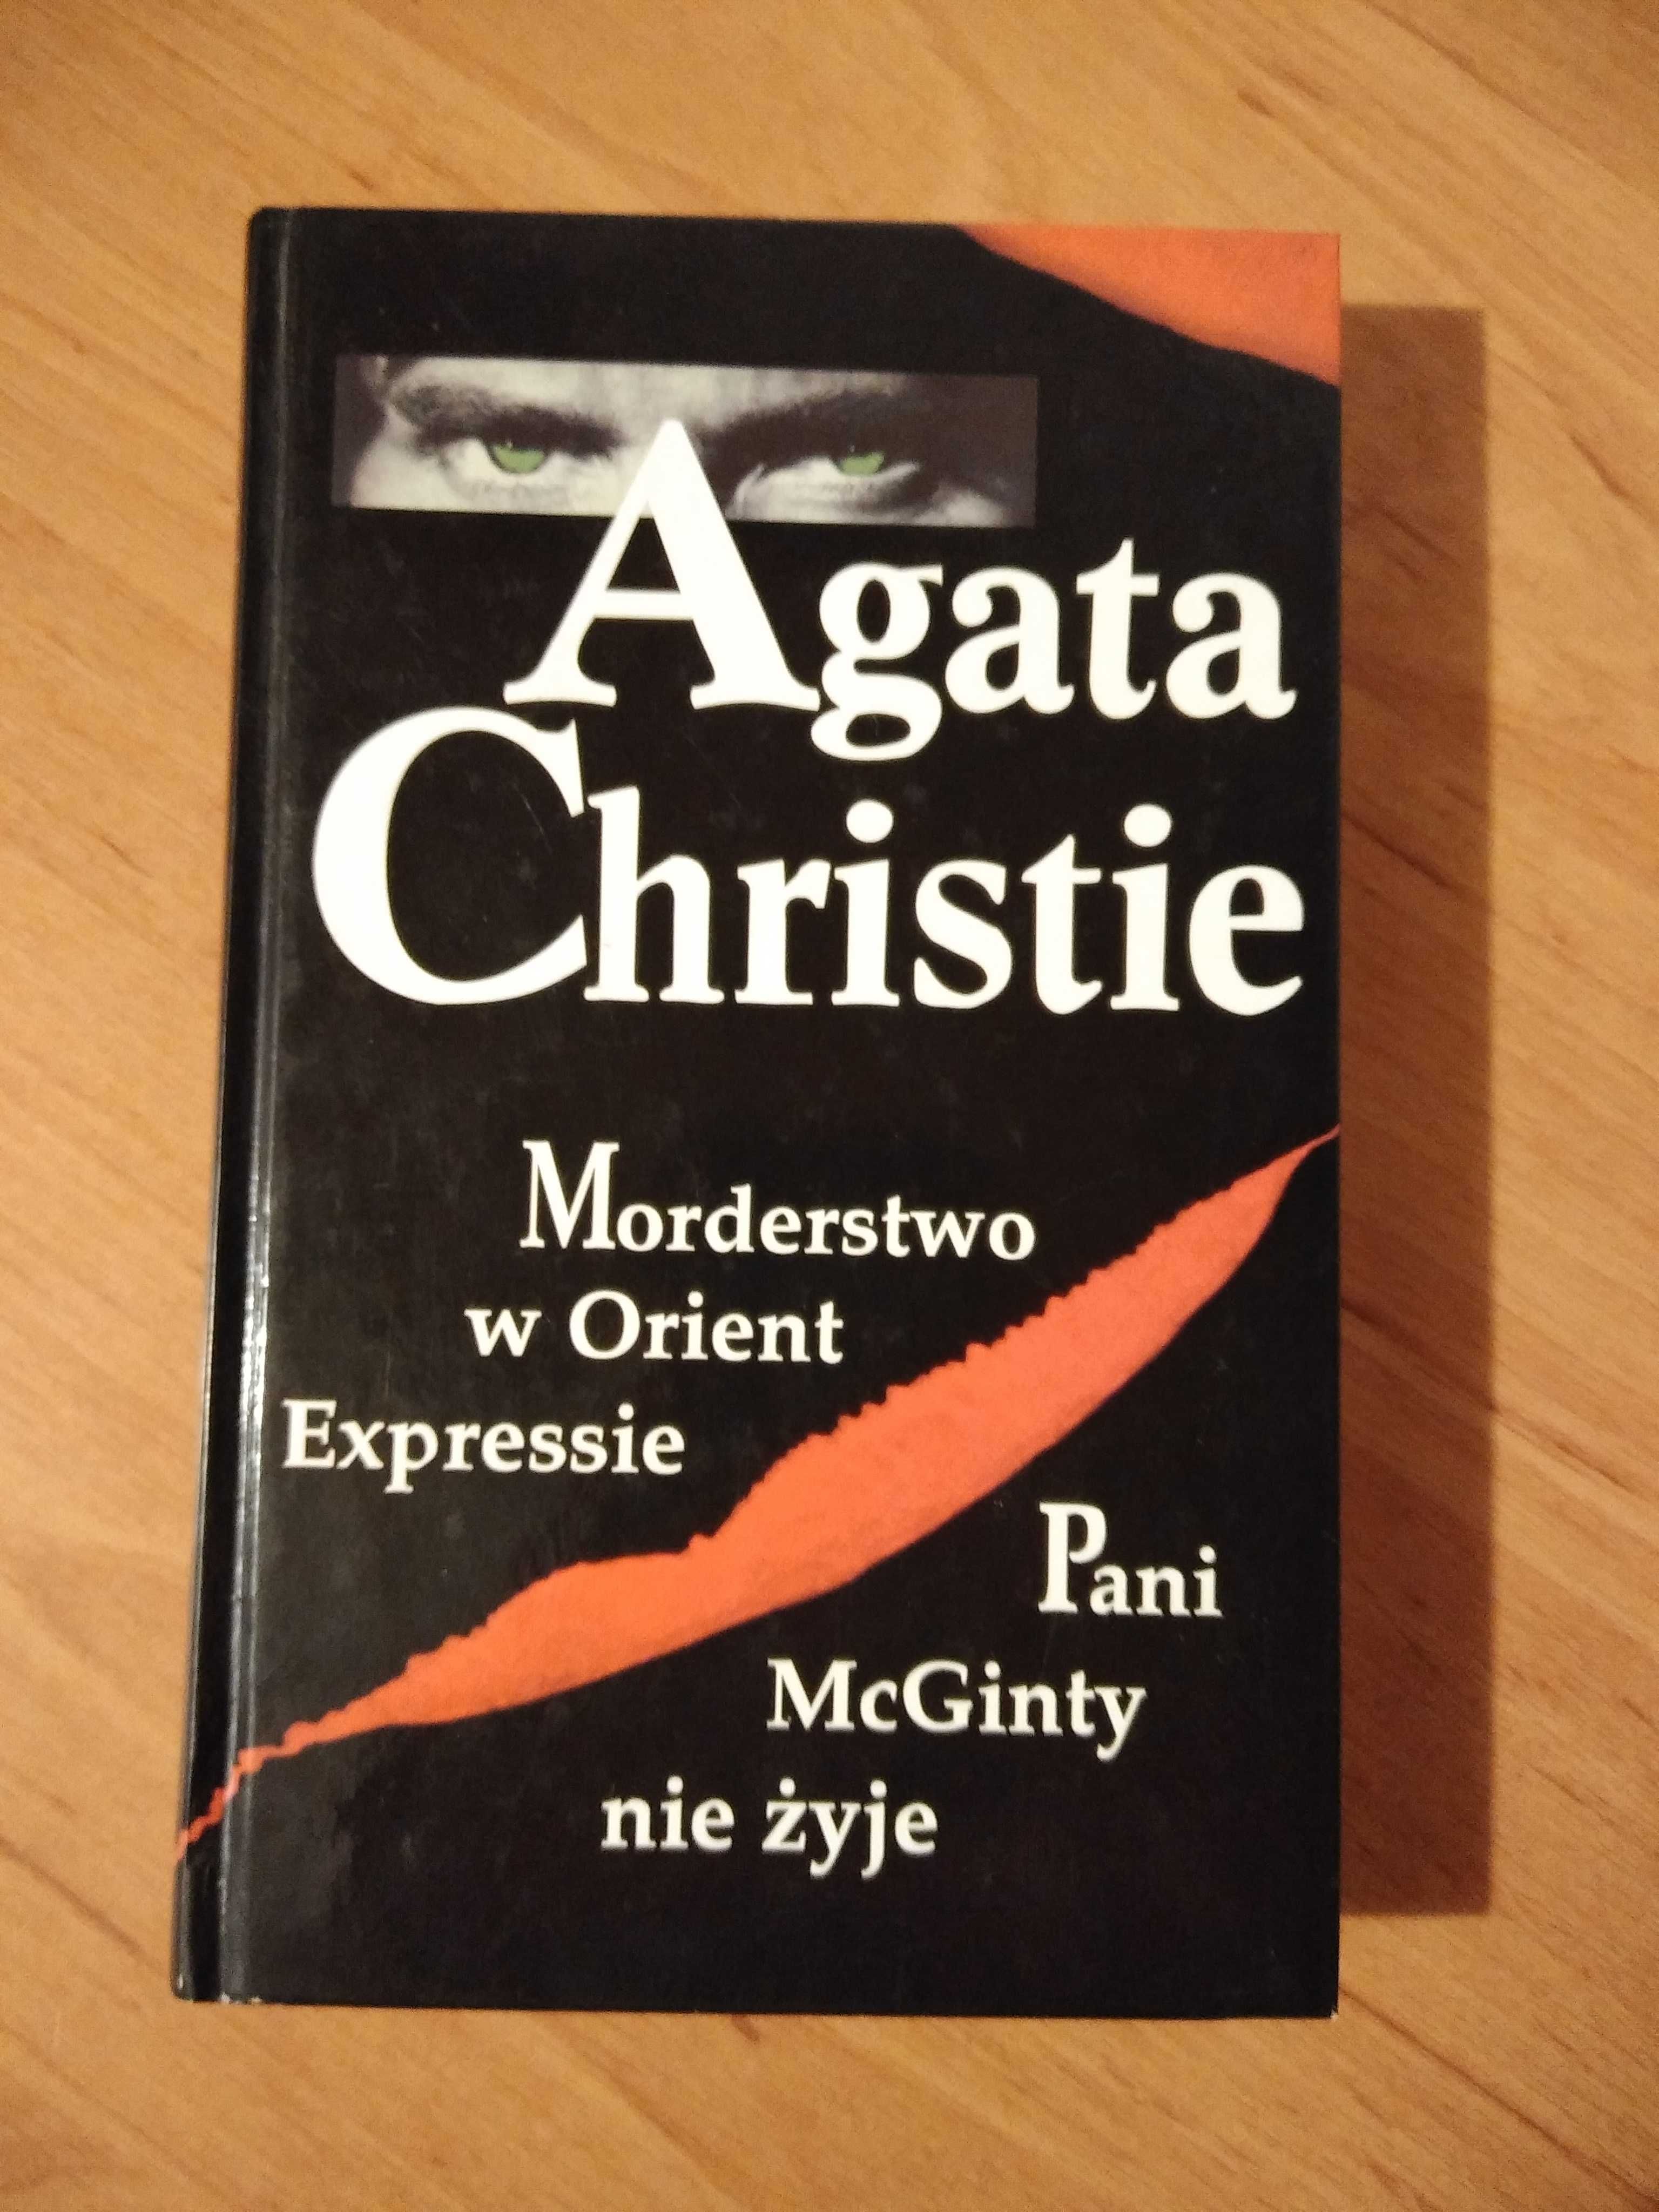 Agata Christie - Morderstwo w Orient Expressie/ Pani McGinty nie żyje